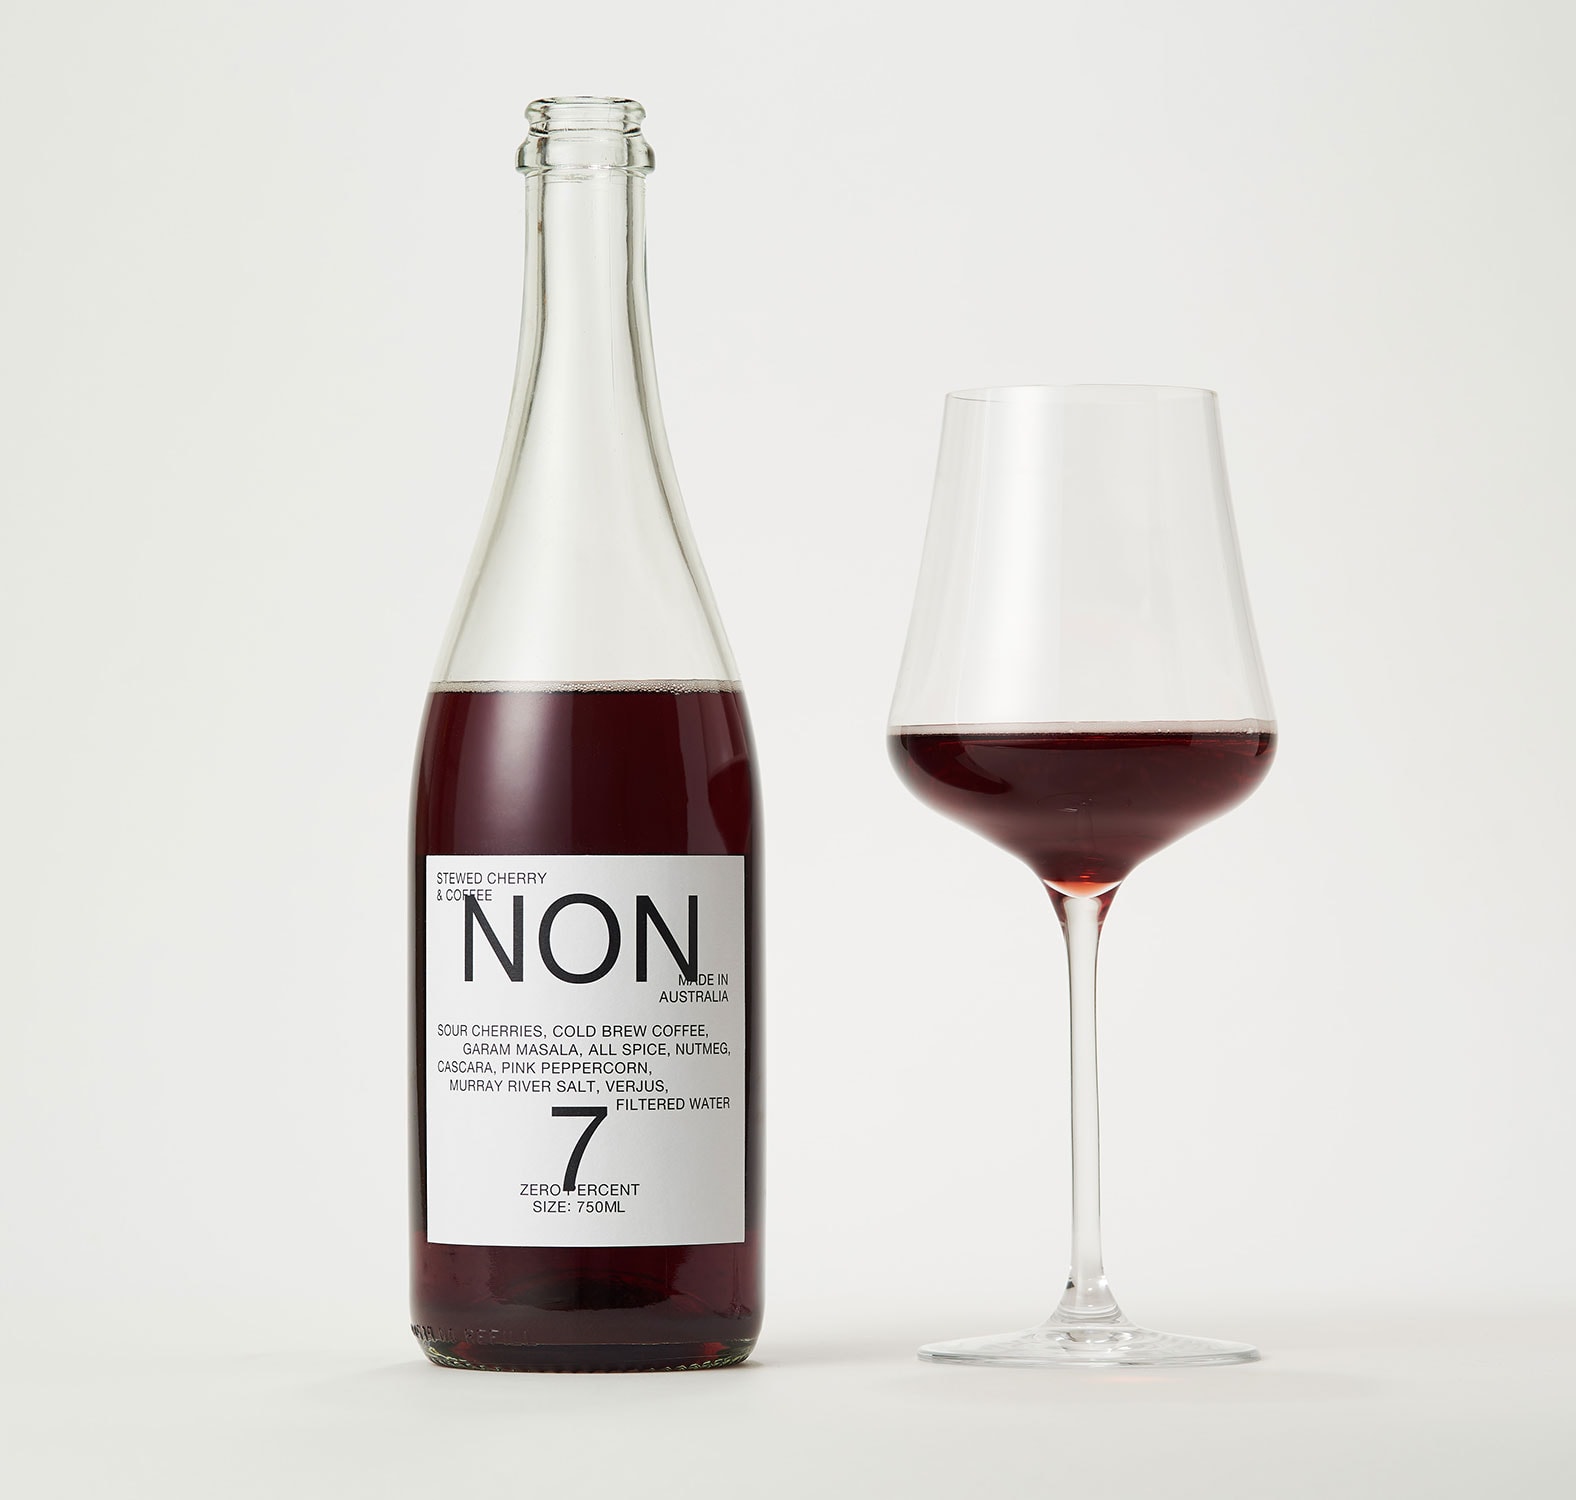 NON7 wine proxy